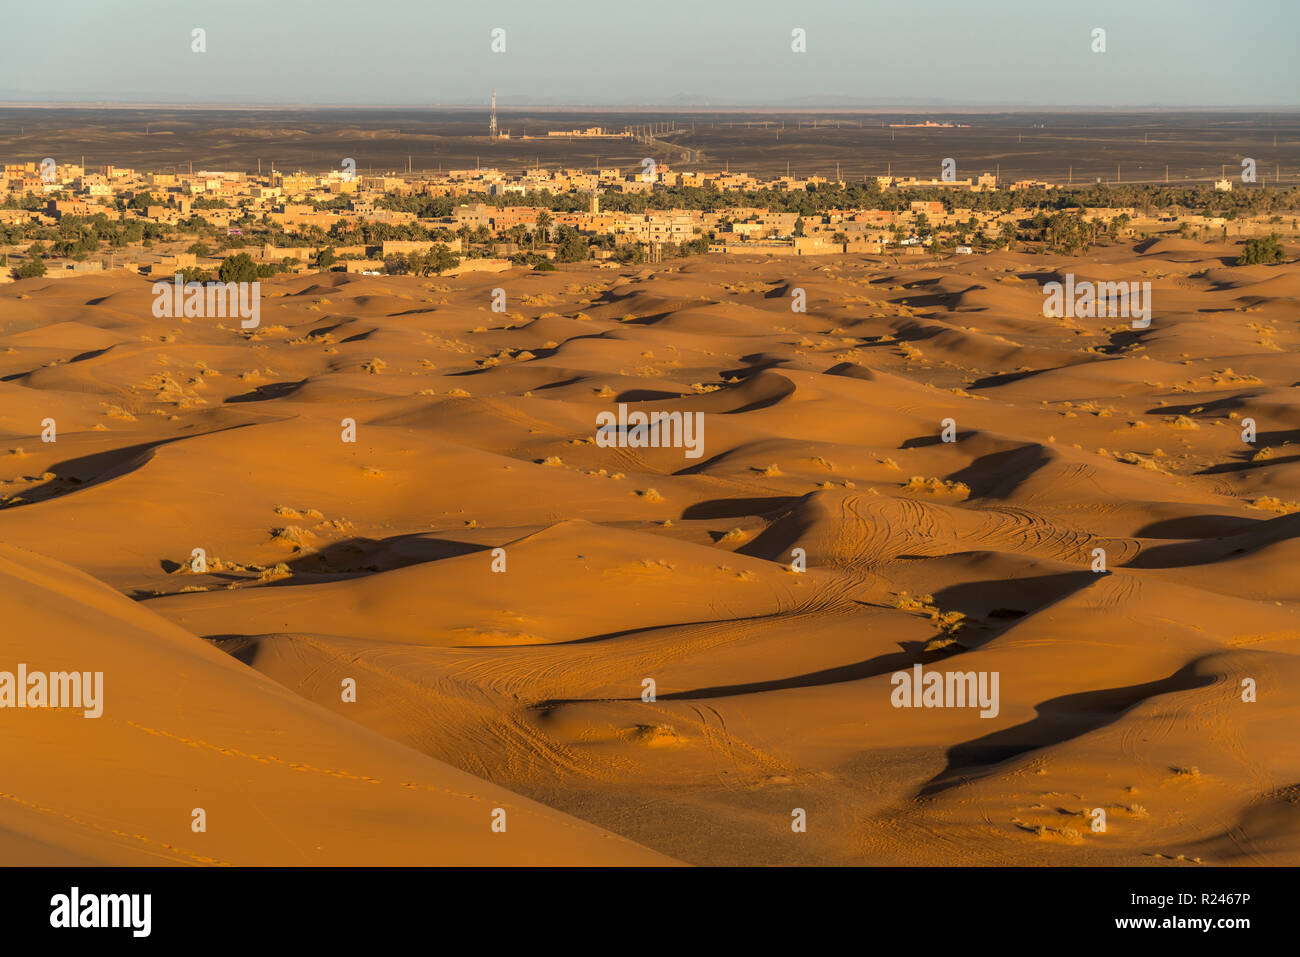 Der Ort und die Merzouga Sahara Ancien Wüste, Marokko | Merzouga village et désert du Sahara, Royaume du Maroc, l'Afrique Banque D'Images